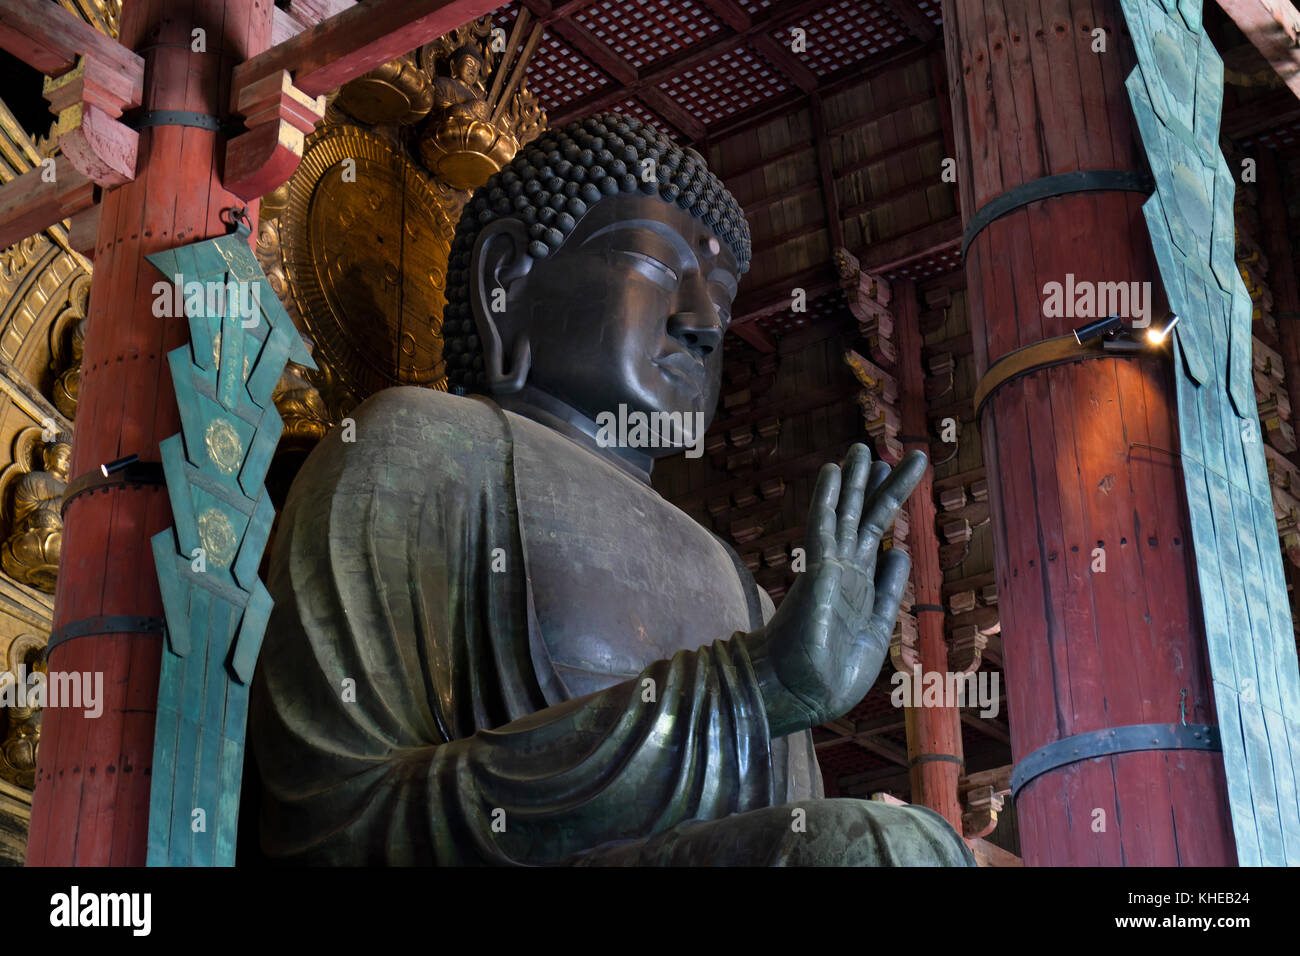 Nara, Japón - Mayo 29, 2017: la estatua de bronce más grande del mundo de Buda en el Gran Buda, el daibutsuden hal Foto de stock